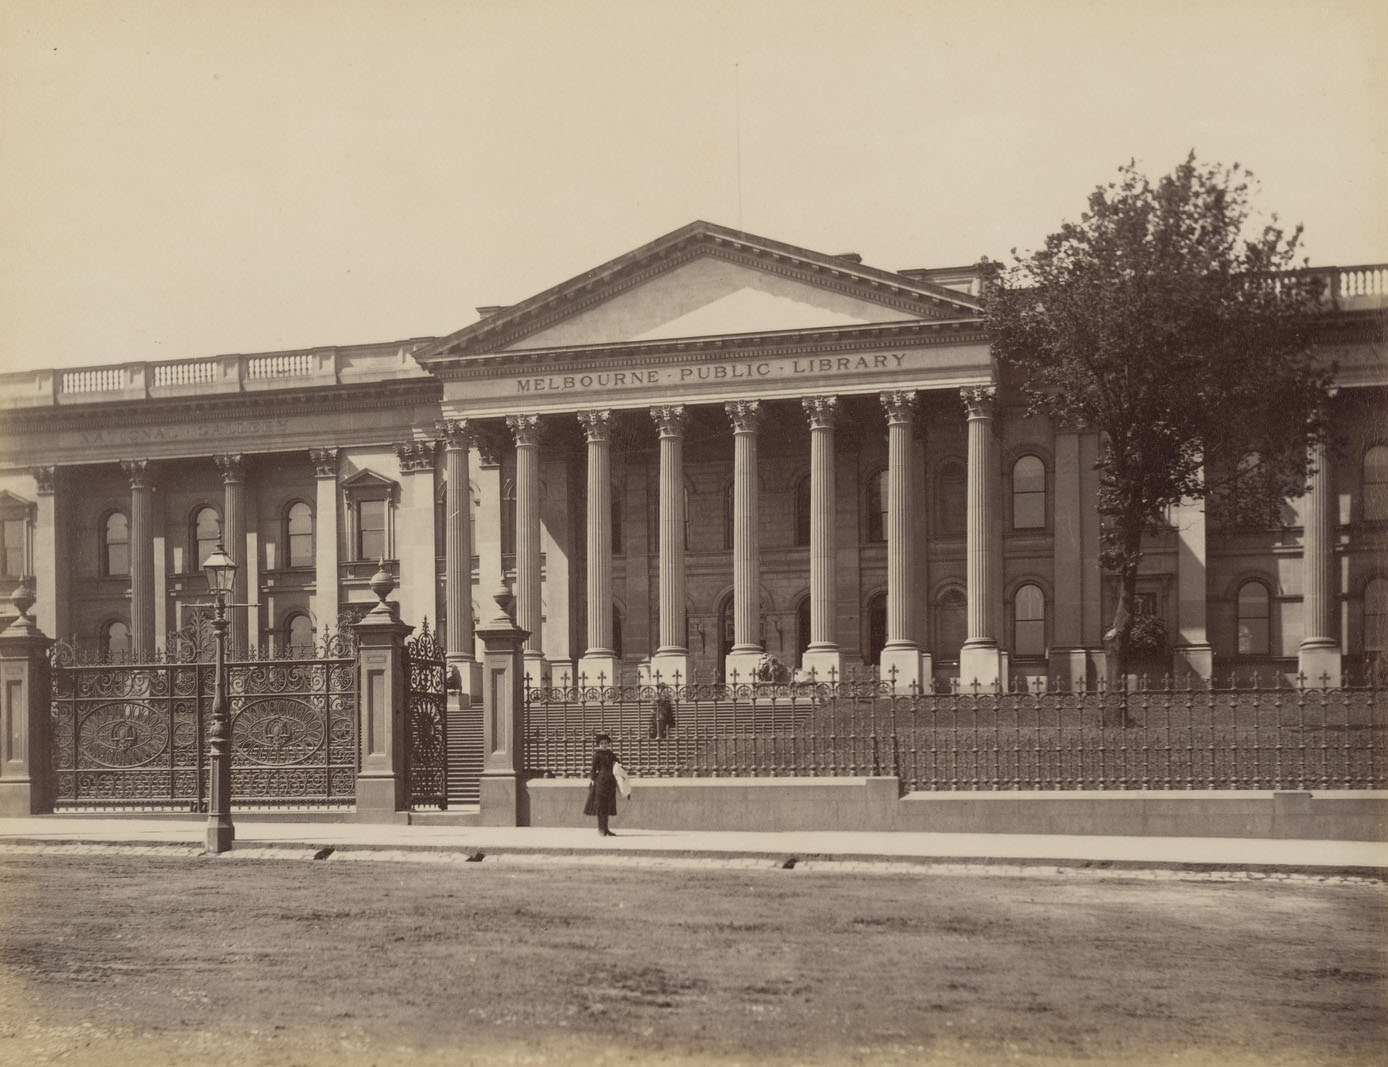 Melbourne Public Library, 1885